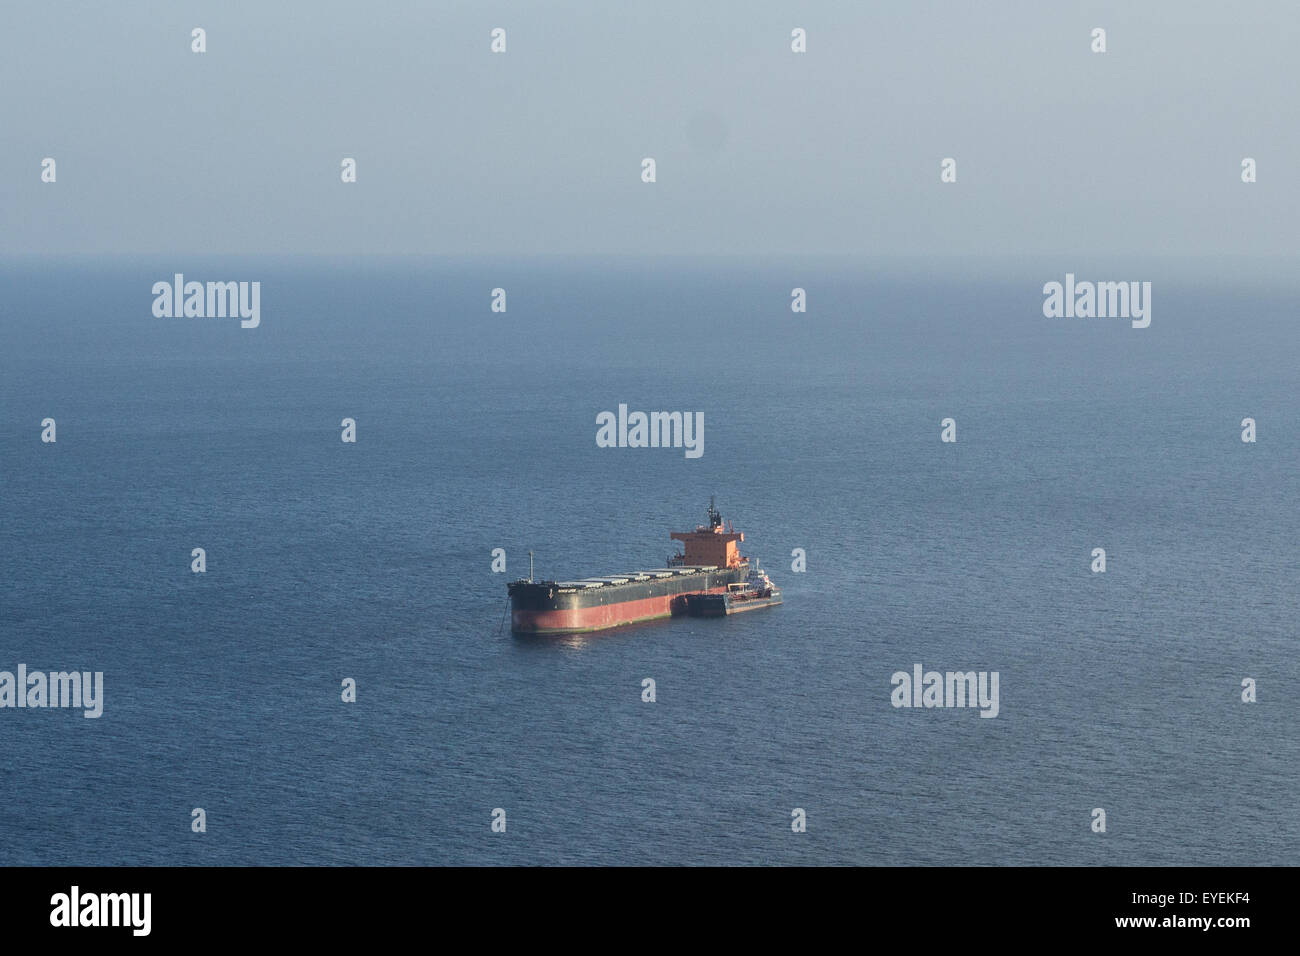 oil tanker ship on ocean Stock Photo